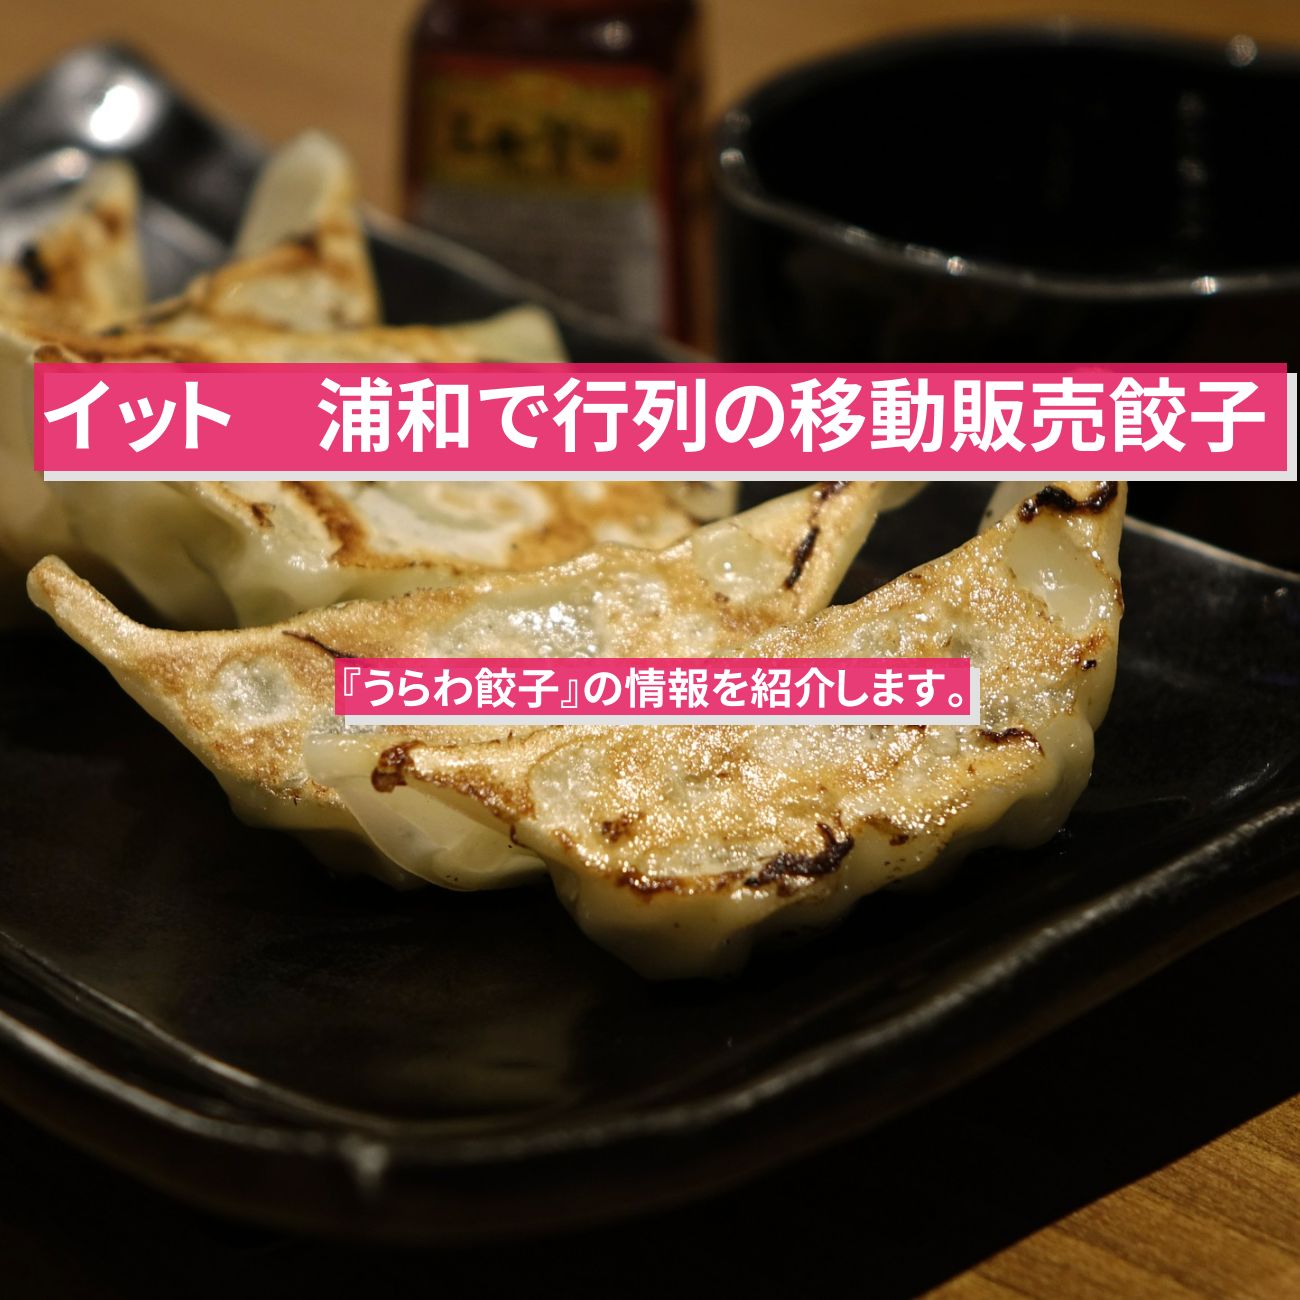 【イット】餃子・浦和で行列の移動販売『うらわ餃子』の情報を紹介します。